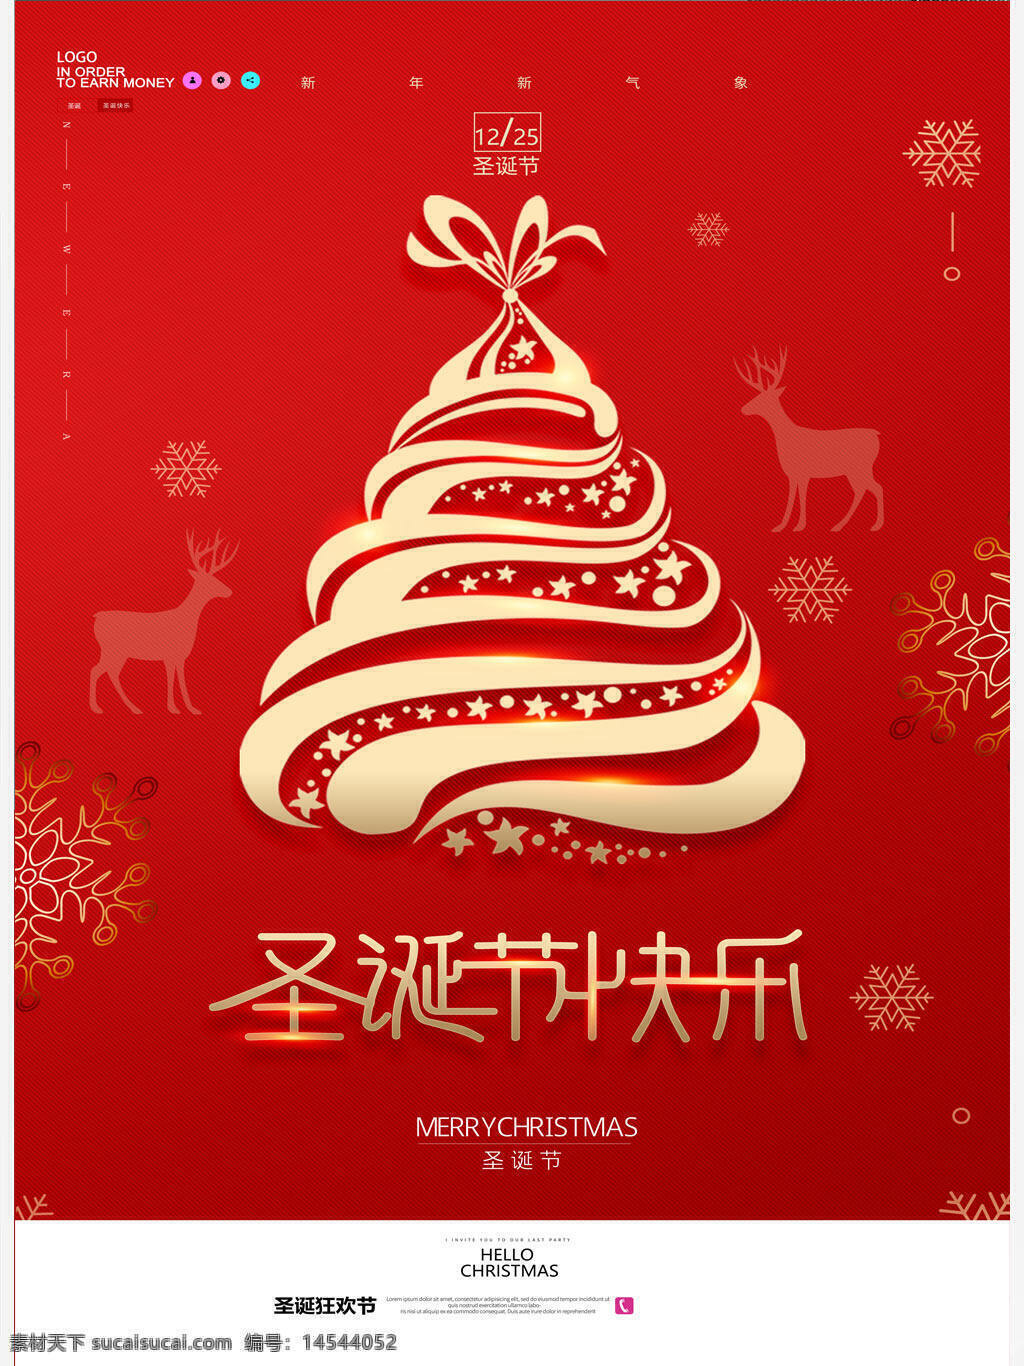 简约红色圣诞节快乐海报设计 简约 红色 圣诞节 快乐 海报 设计